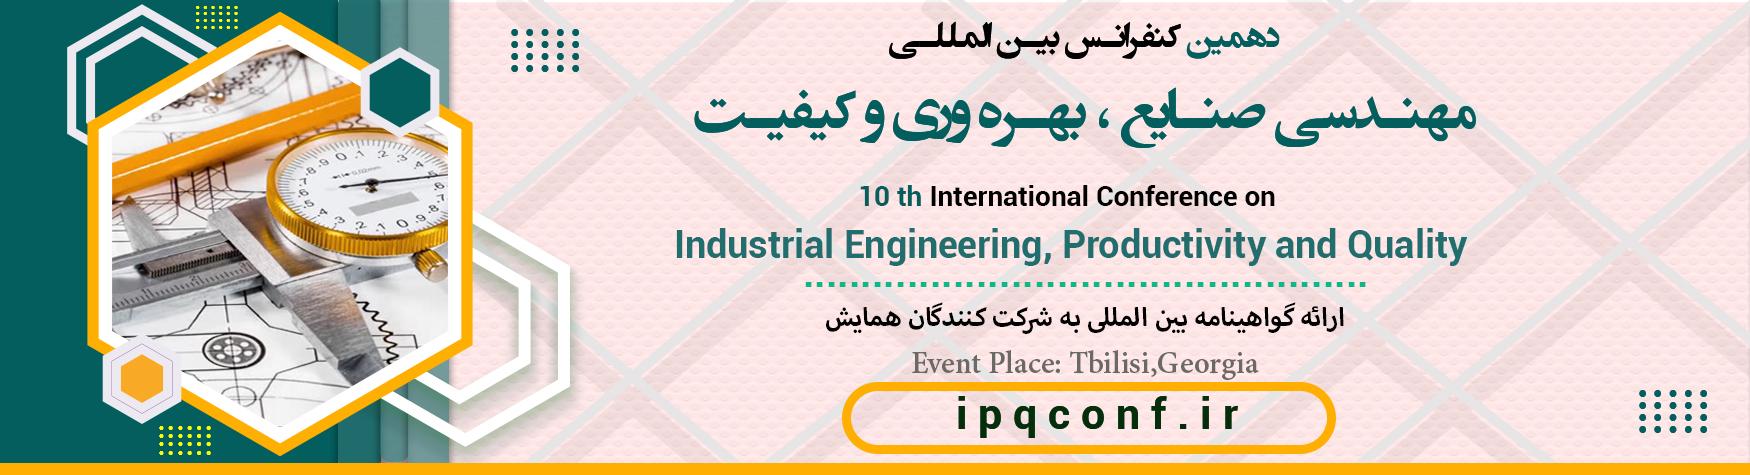 کنفرانس بین المللی مهندسی صنایع ، بهره وری و کیفیت	